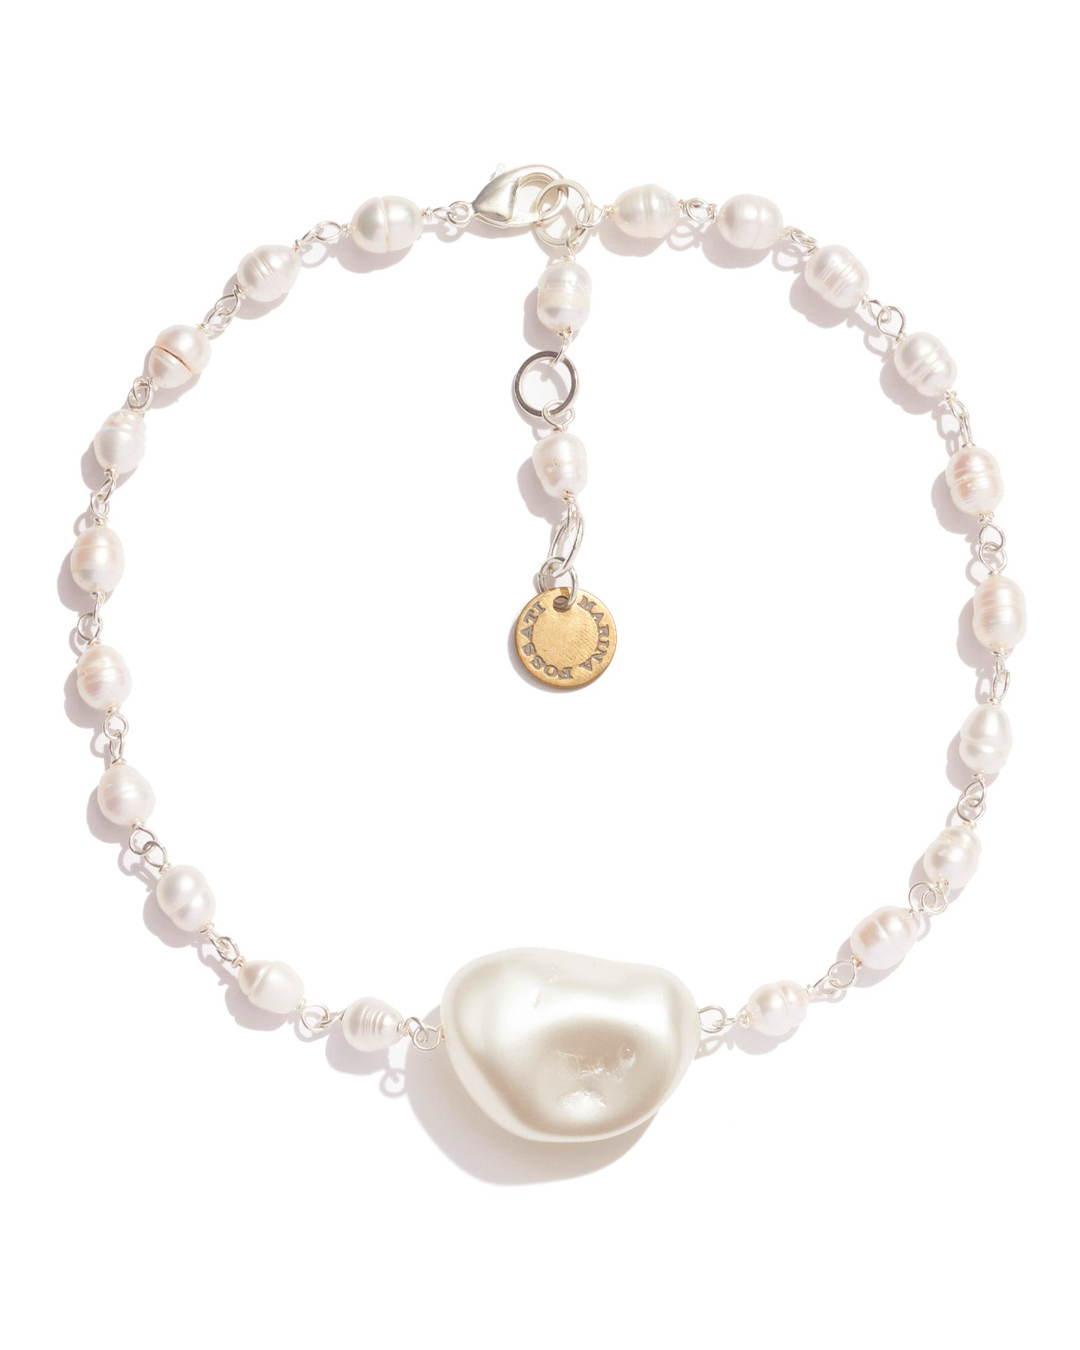 ожерелье Marina Fossati PEPITA белый+золотой UNI, размер UNI, цвет белый+золотой PEPITA белый+золотой UNI - фото 1